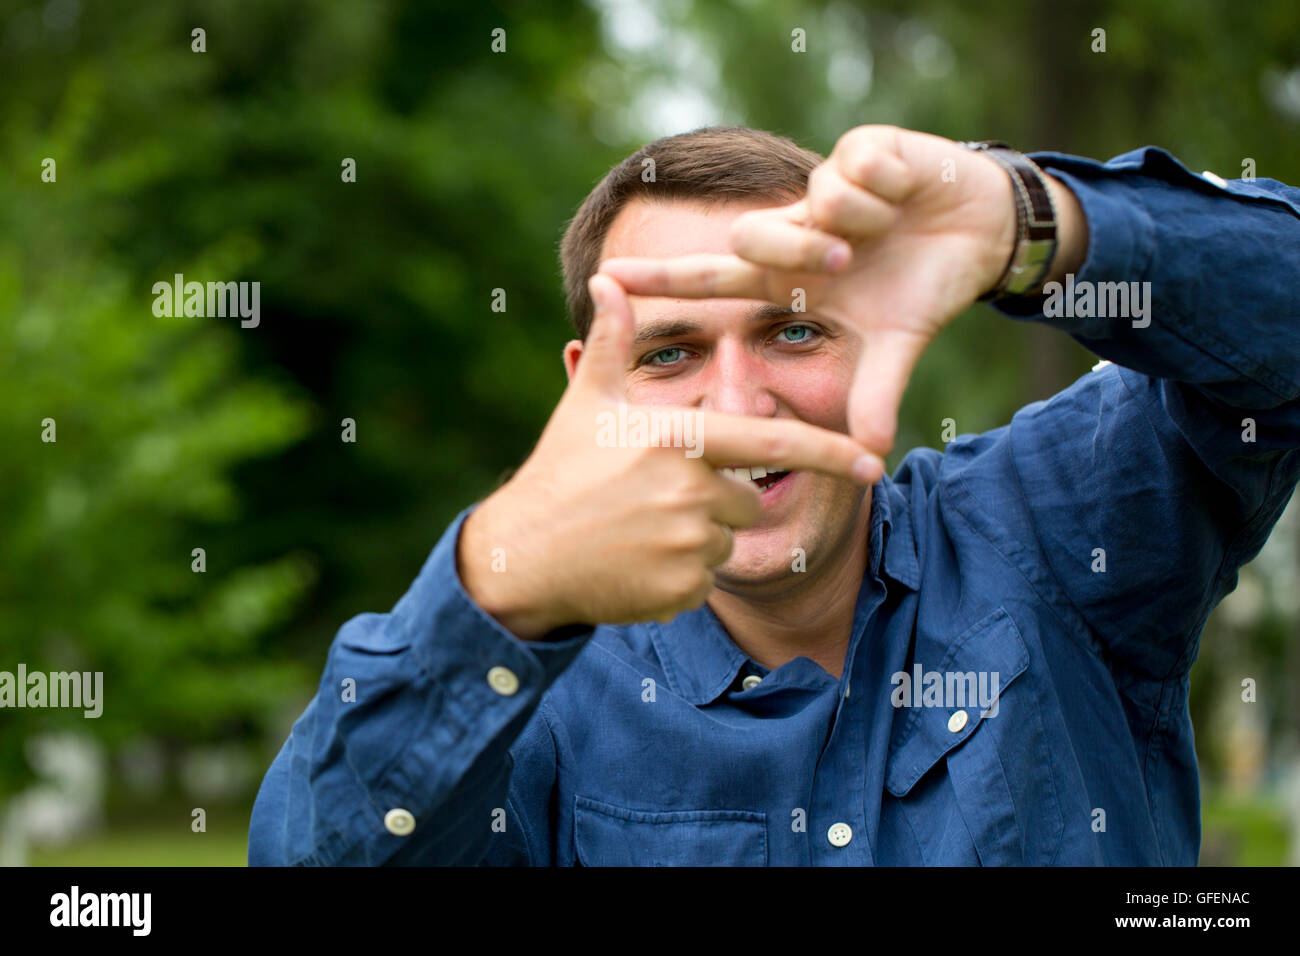 Ein Mann auf der Suche und Fokussierung durch seine Hände auf grünen Sommer Hintergrund Stockfoto